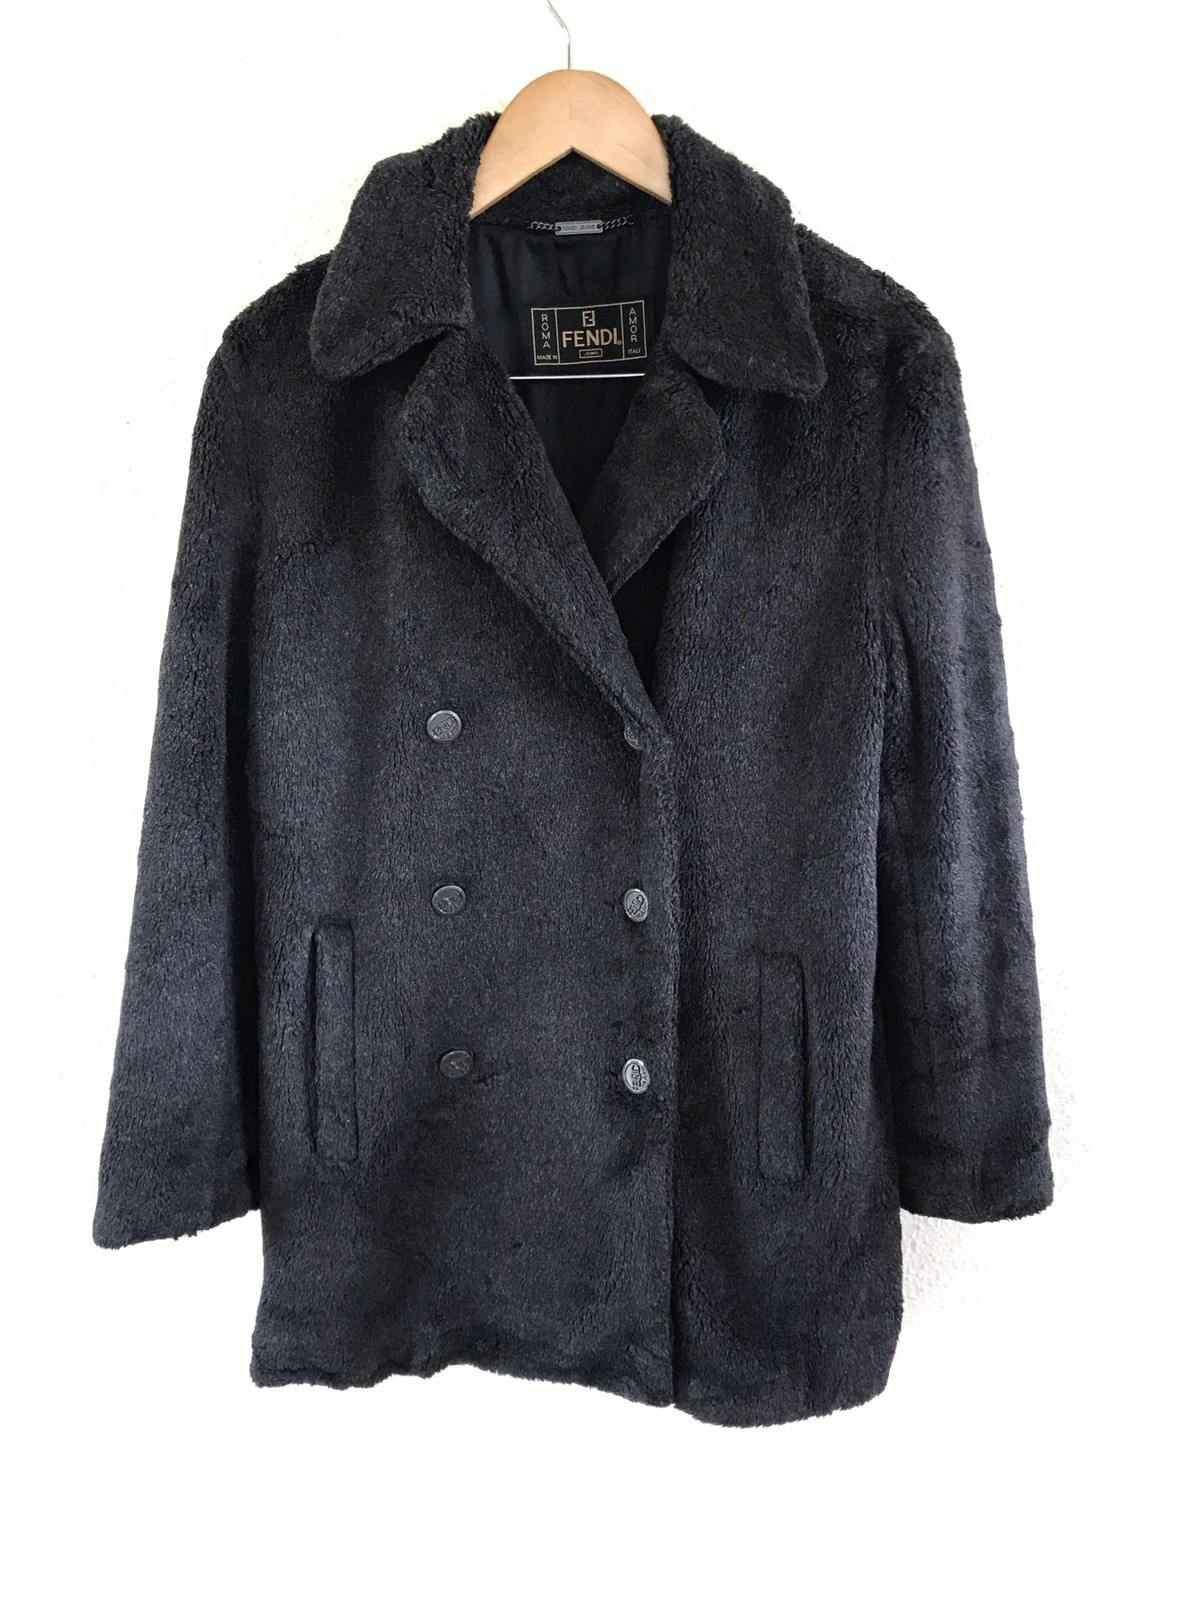 FENDI Jeans Boa Coat/ Fur Jacket Made in Italy - 1